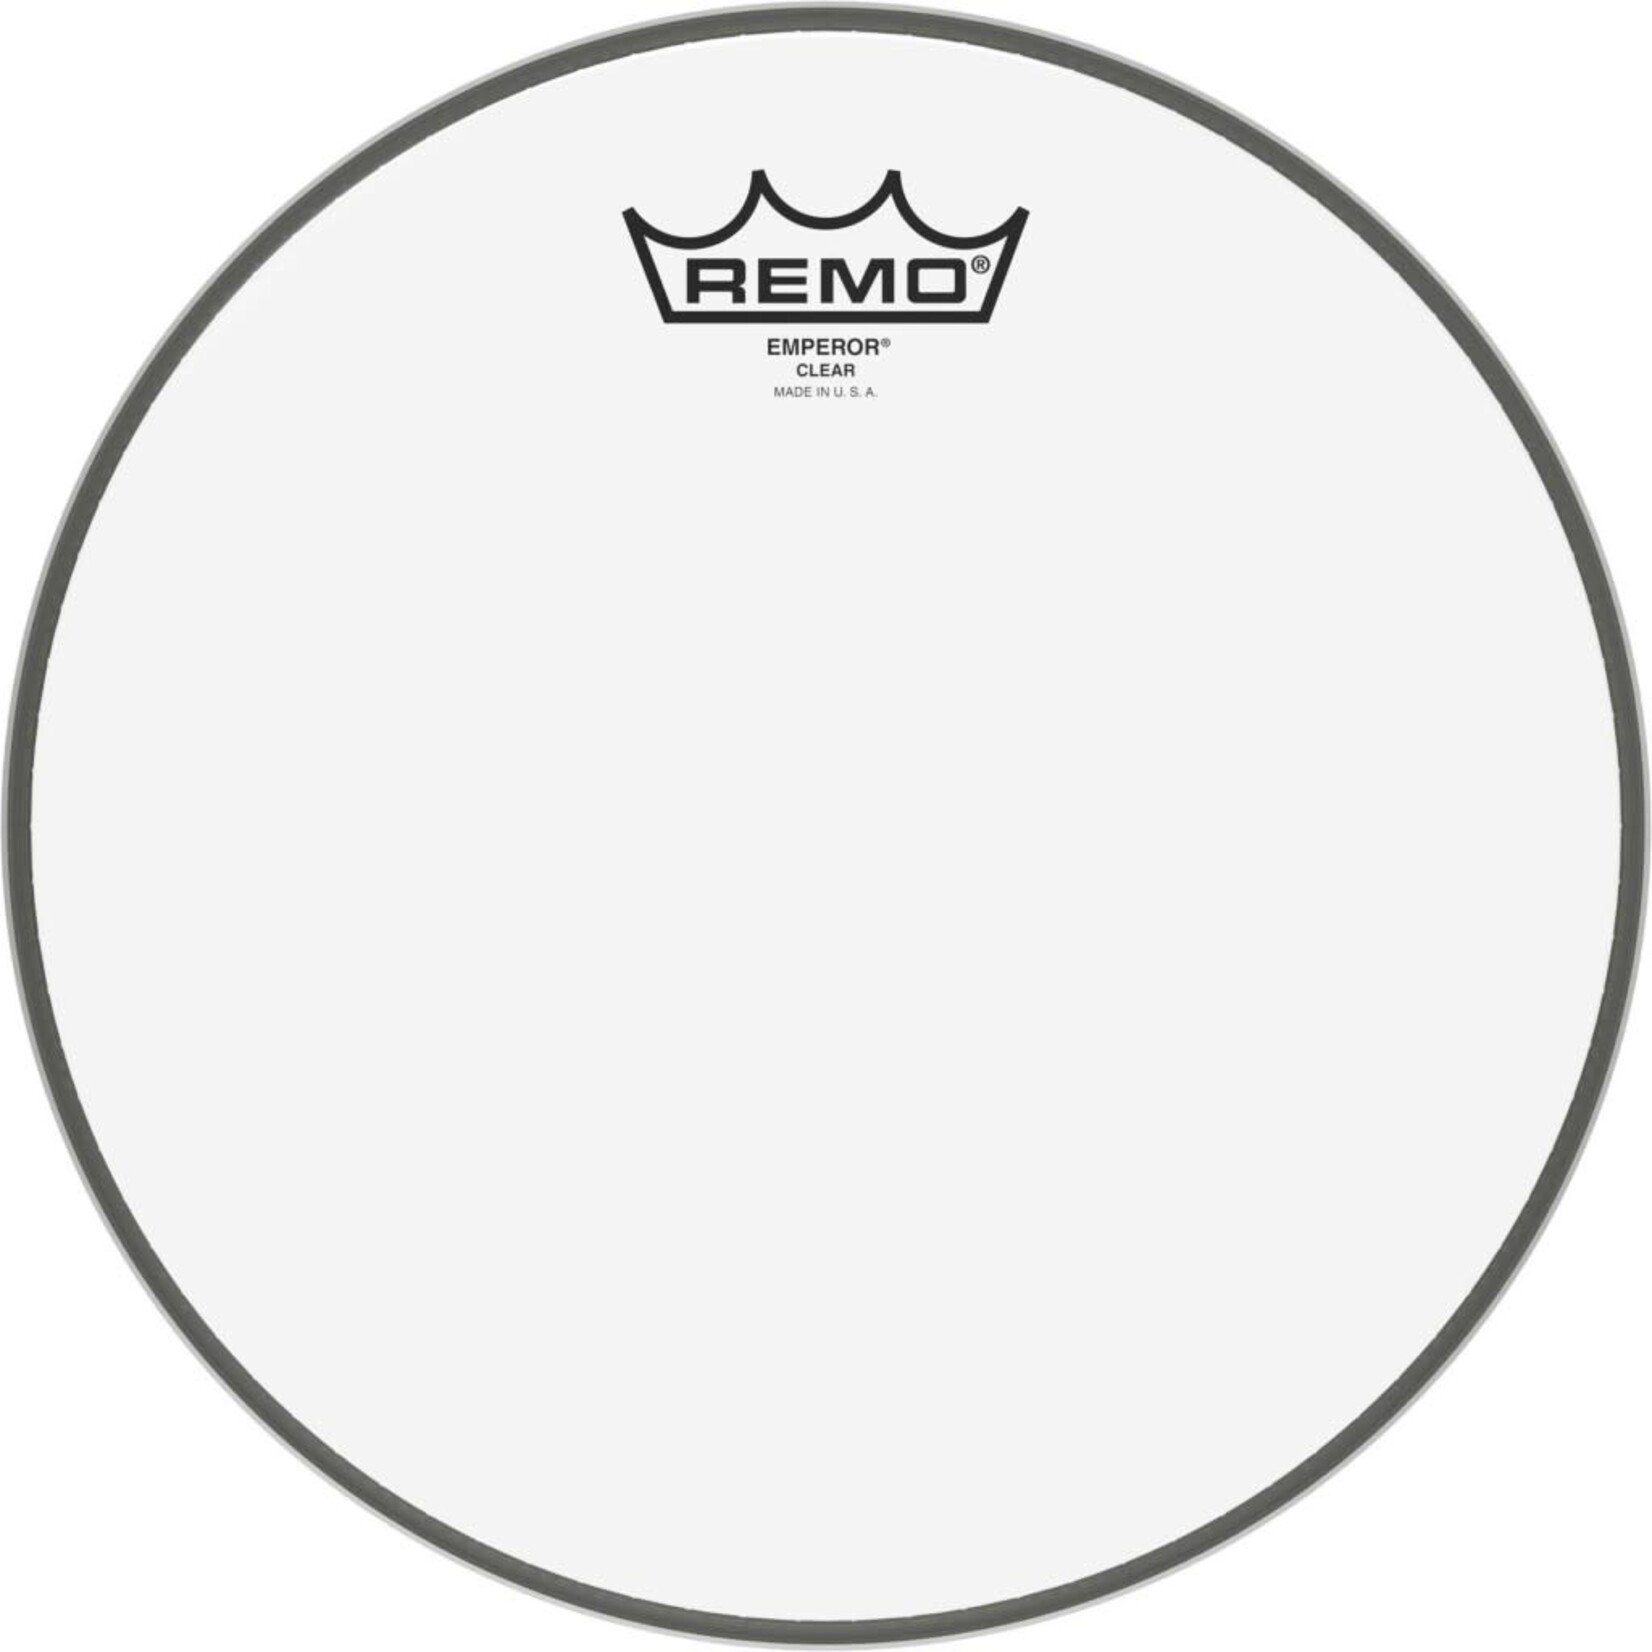 Remo Remo Emperor drumvel